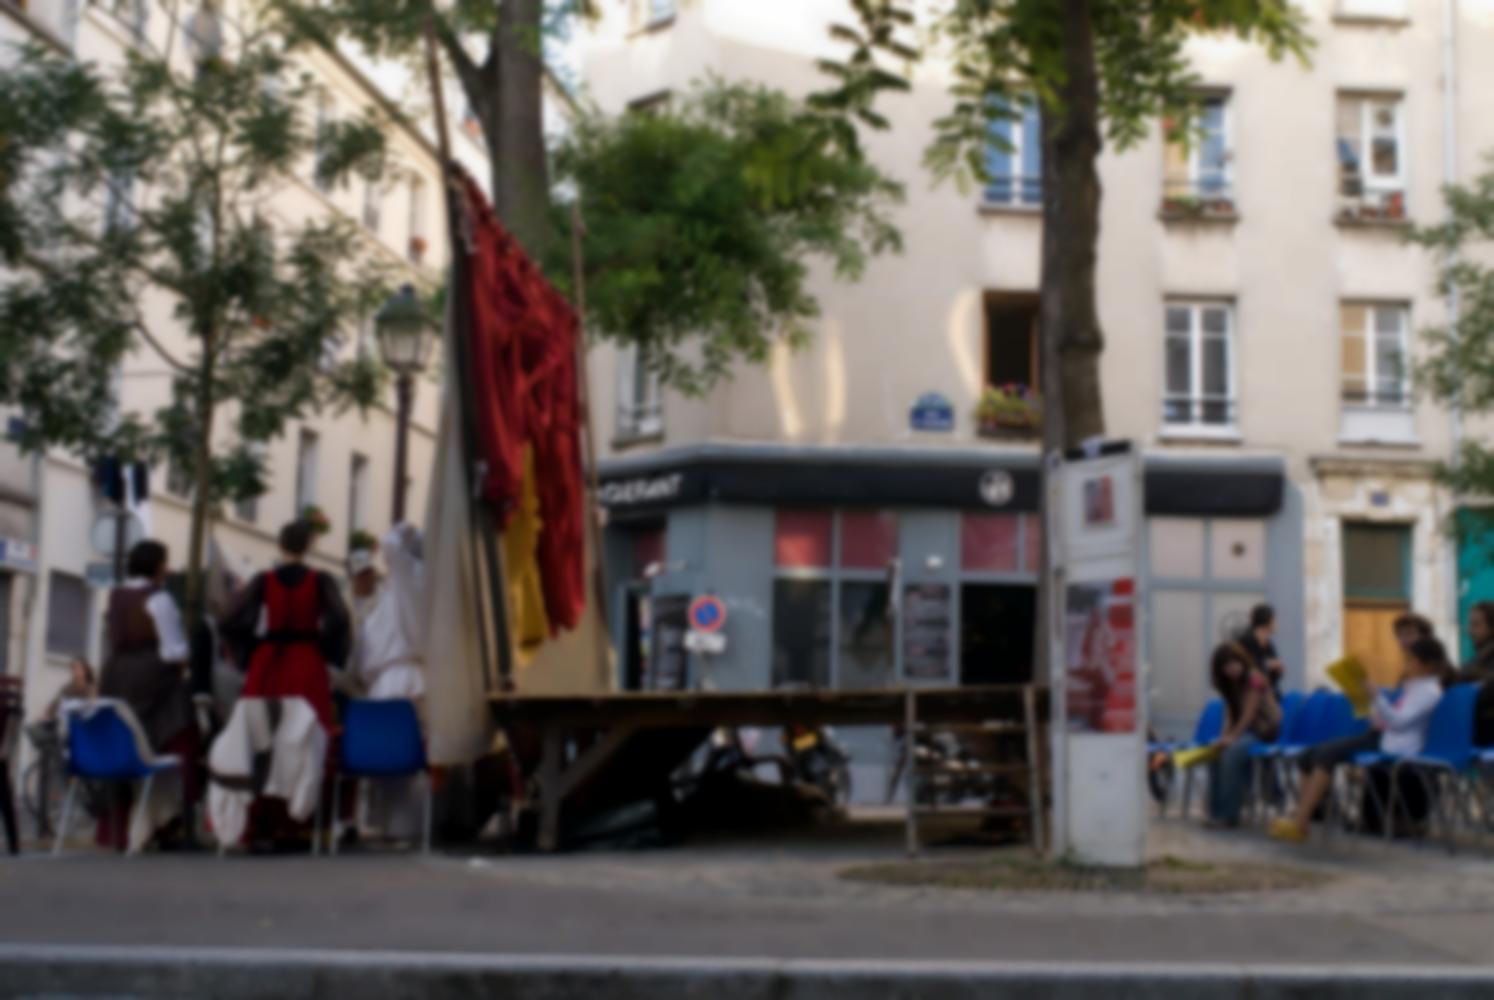 Posés place Sainte-Marthe, des chaises, une scène et des rideaux, derrière lesquels les comédiens se préparent. Paris, août 2010.